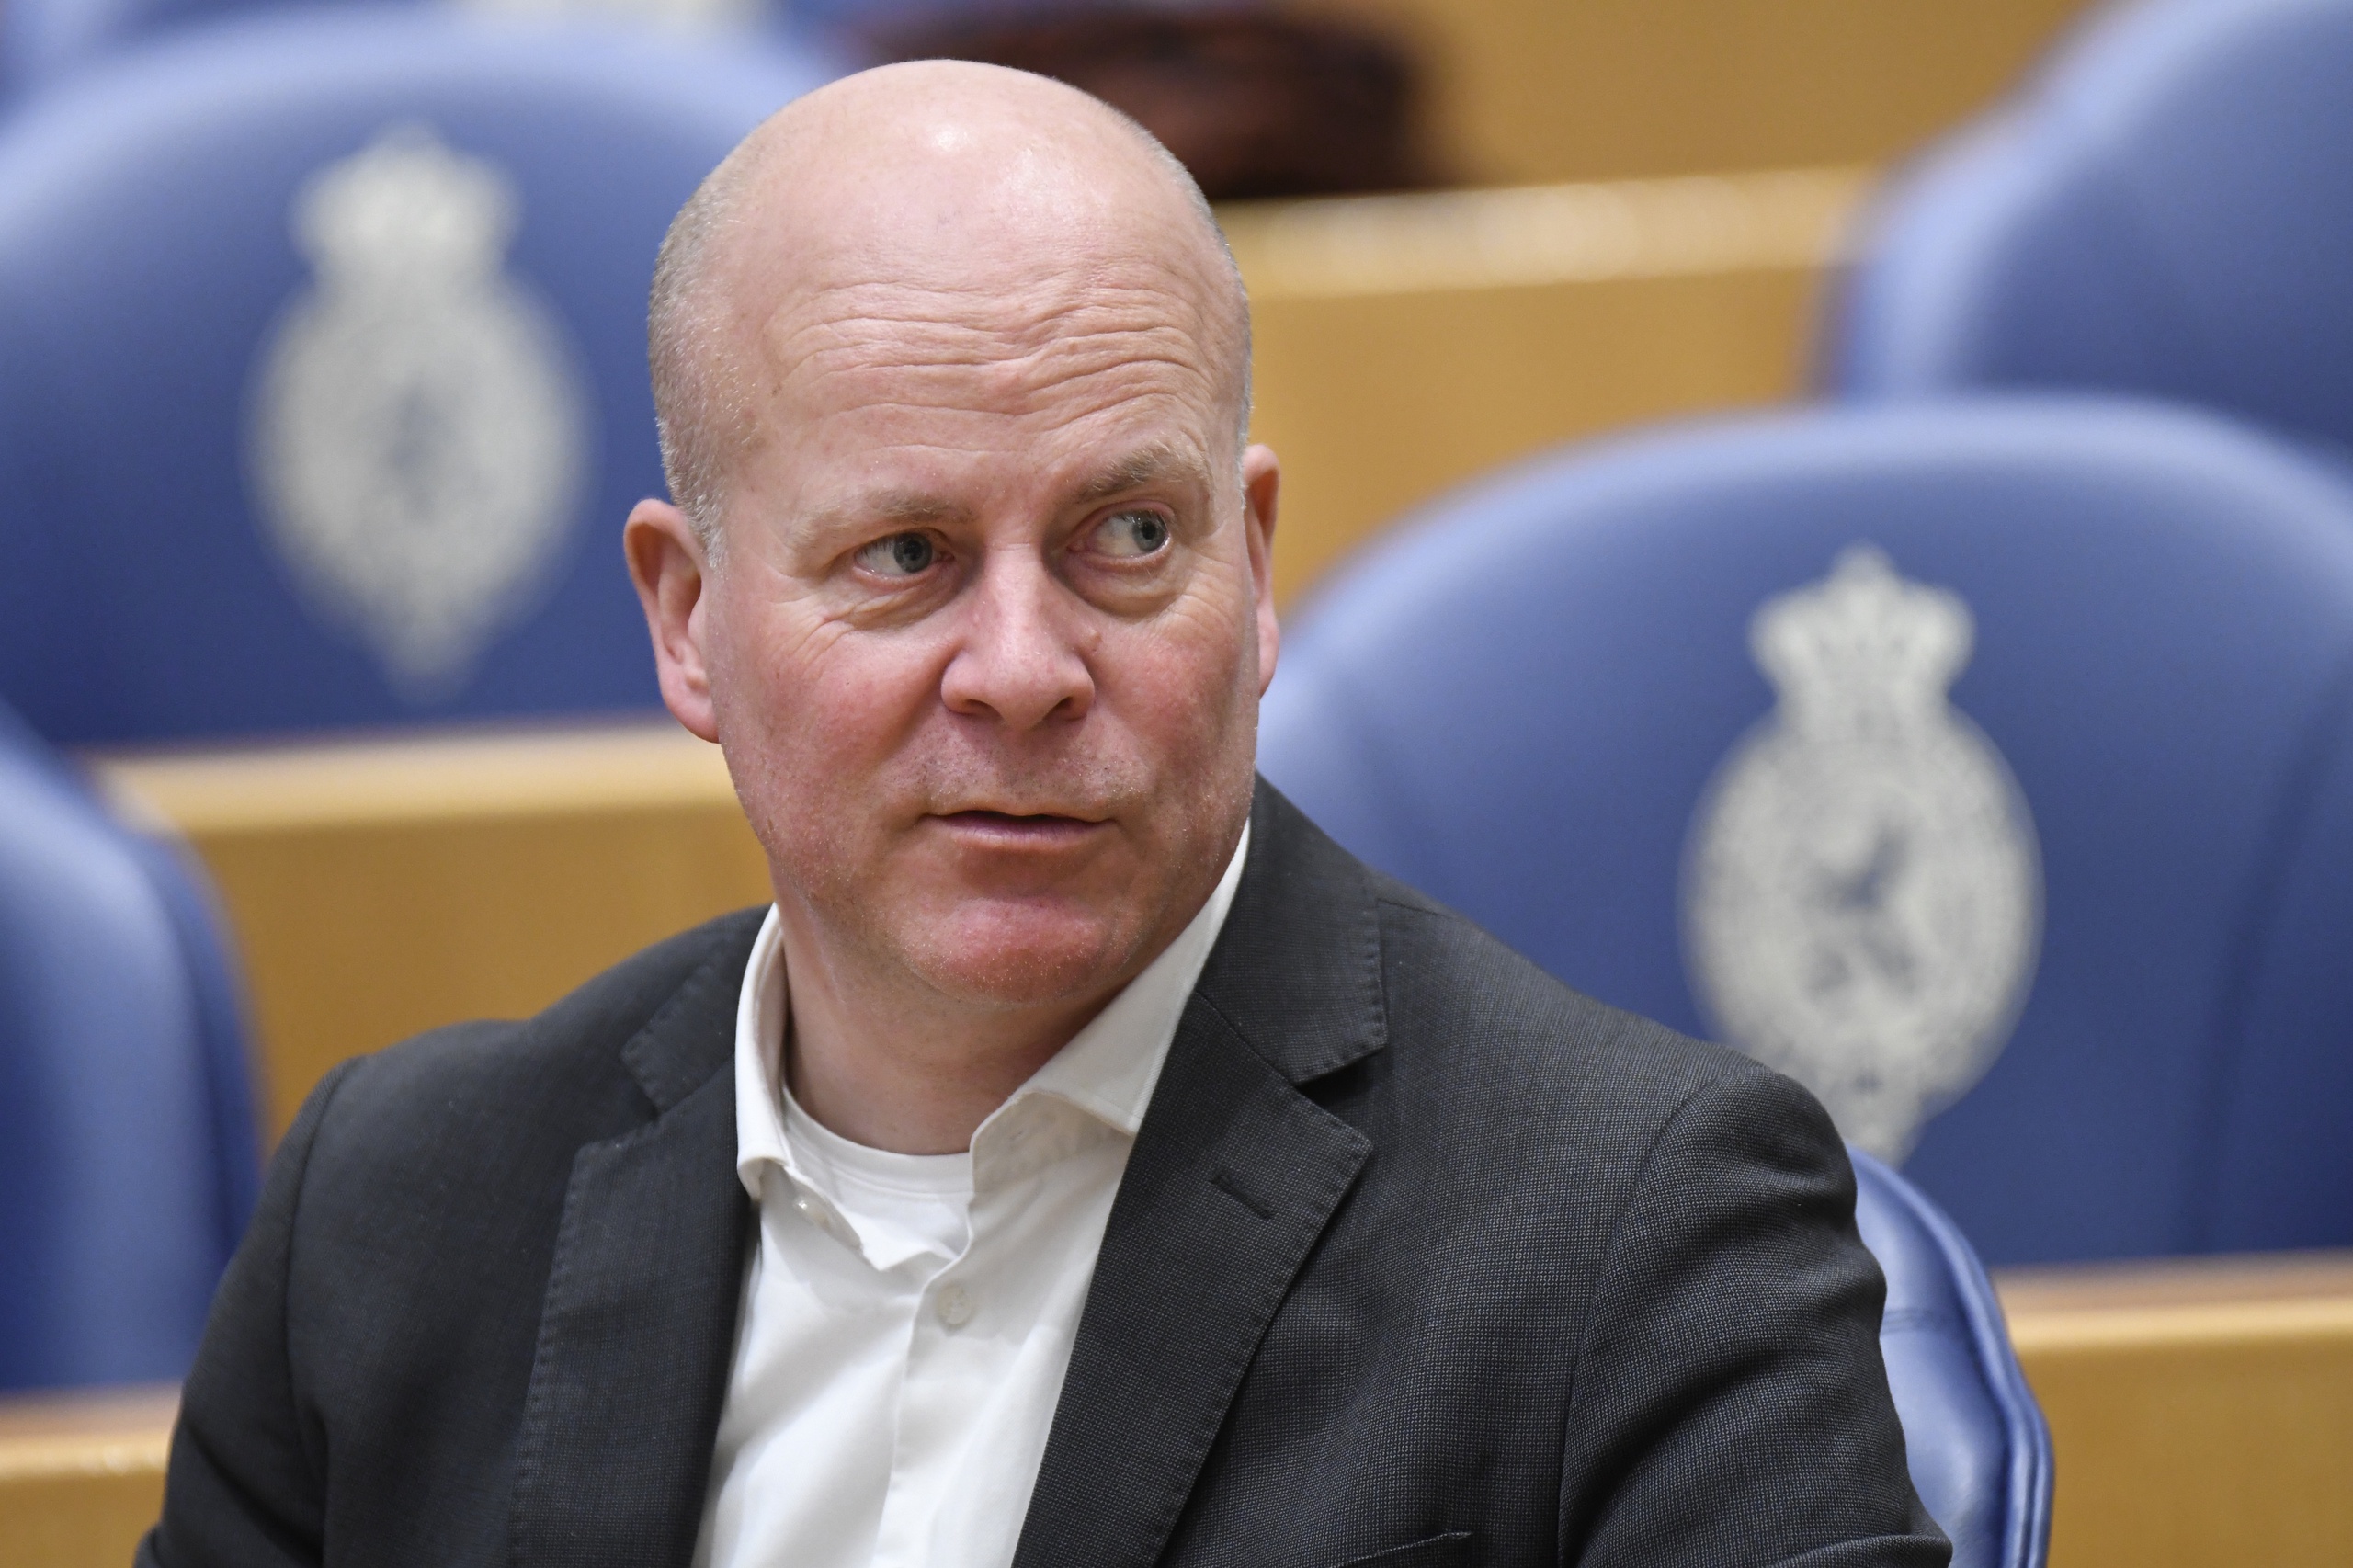 CDA-Tweede Kamerlid Raymond Knops, in het vorige kabinet staatssecretaris van Binnenlandse Zaken en Koninkrijksrelaties, verlaat de landelijke politiek. Hij wordt bestuursvoorzitter van de Nederlandse Industrie voor Defensie en Veiligheid (NIDV).